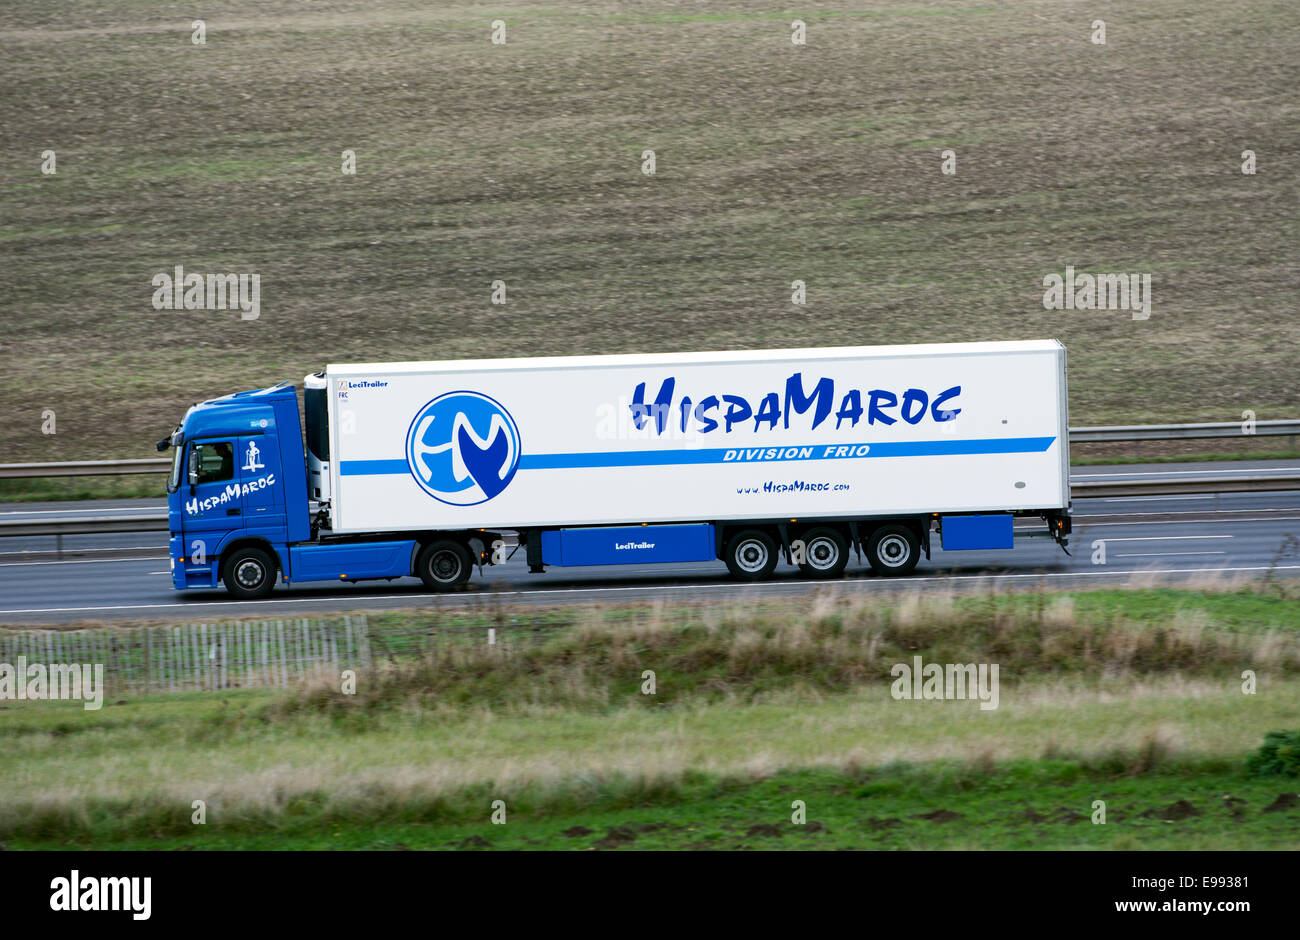 Moroccan lorry on M40 motorway, Warwickshire, UK Stock Photo